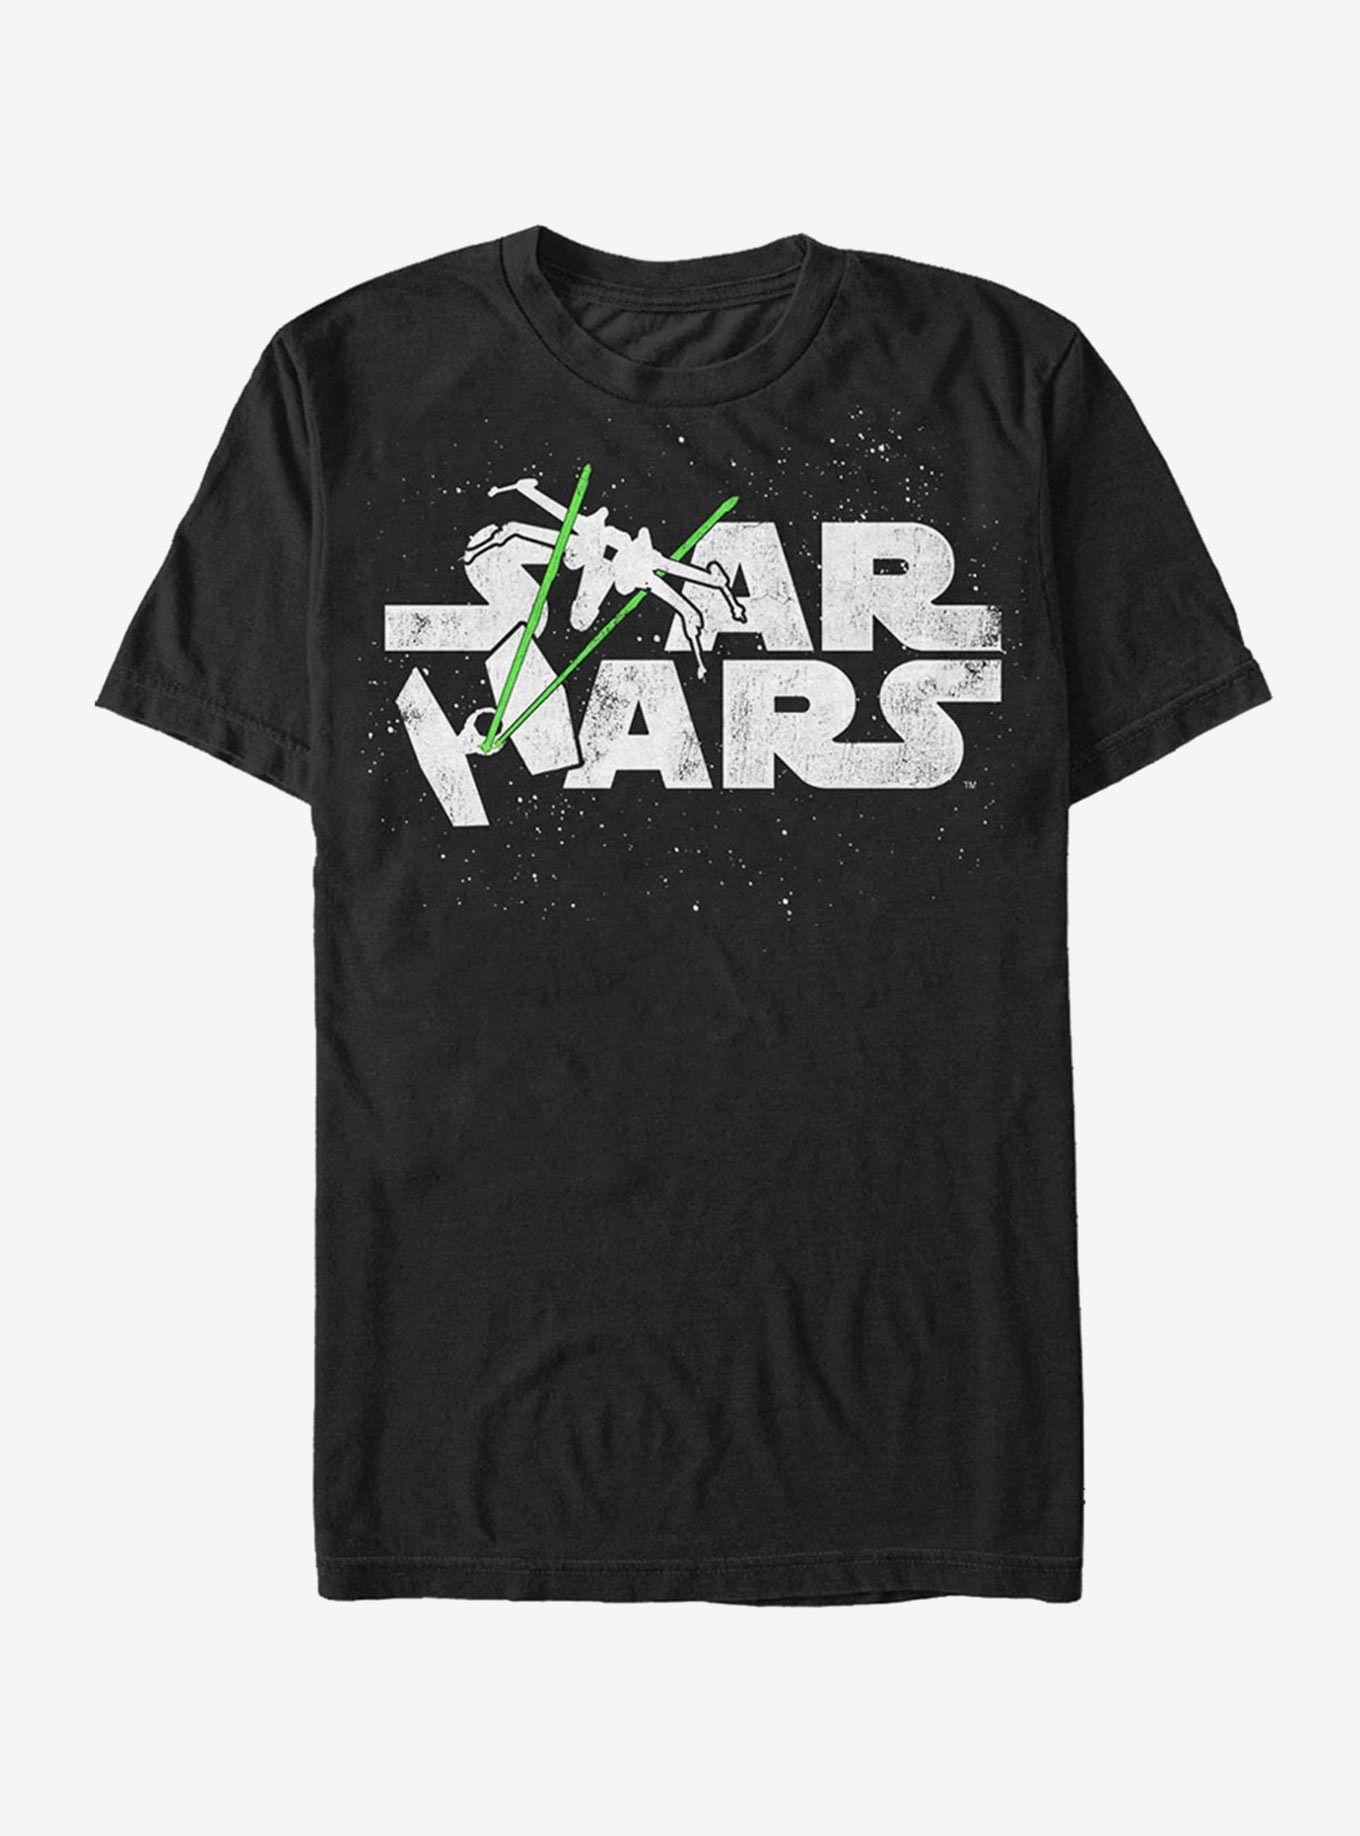 Starship Logo - Star Wars Starship Logo T Shirt